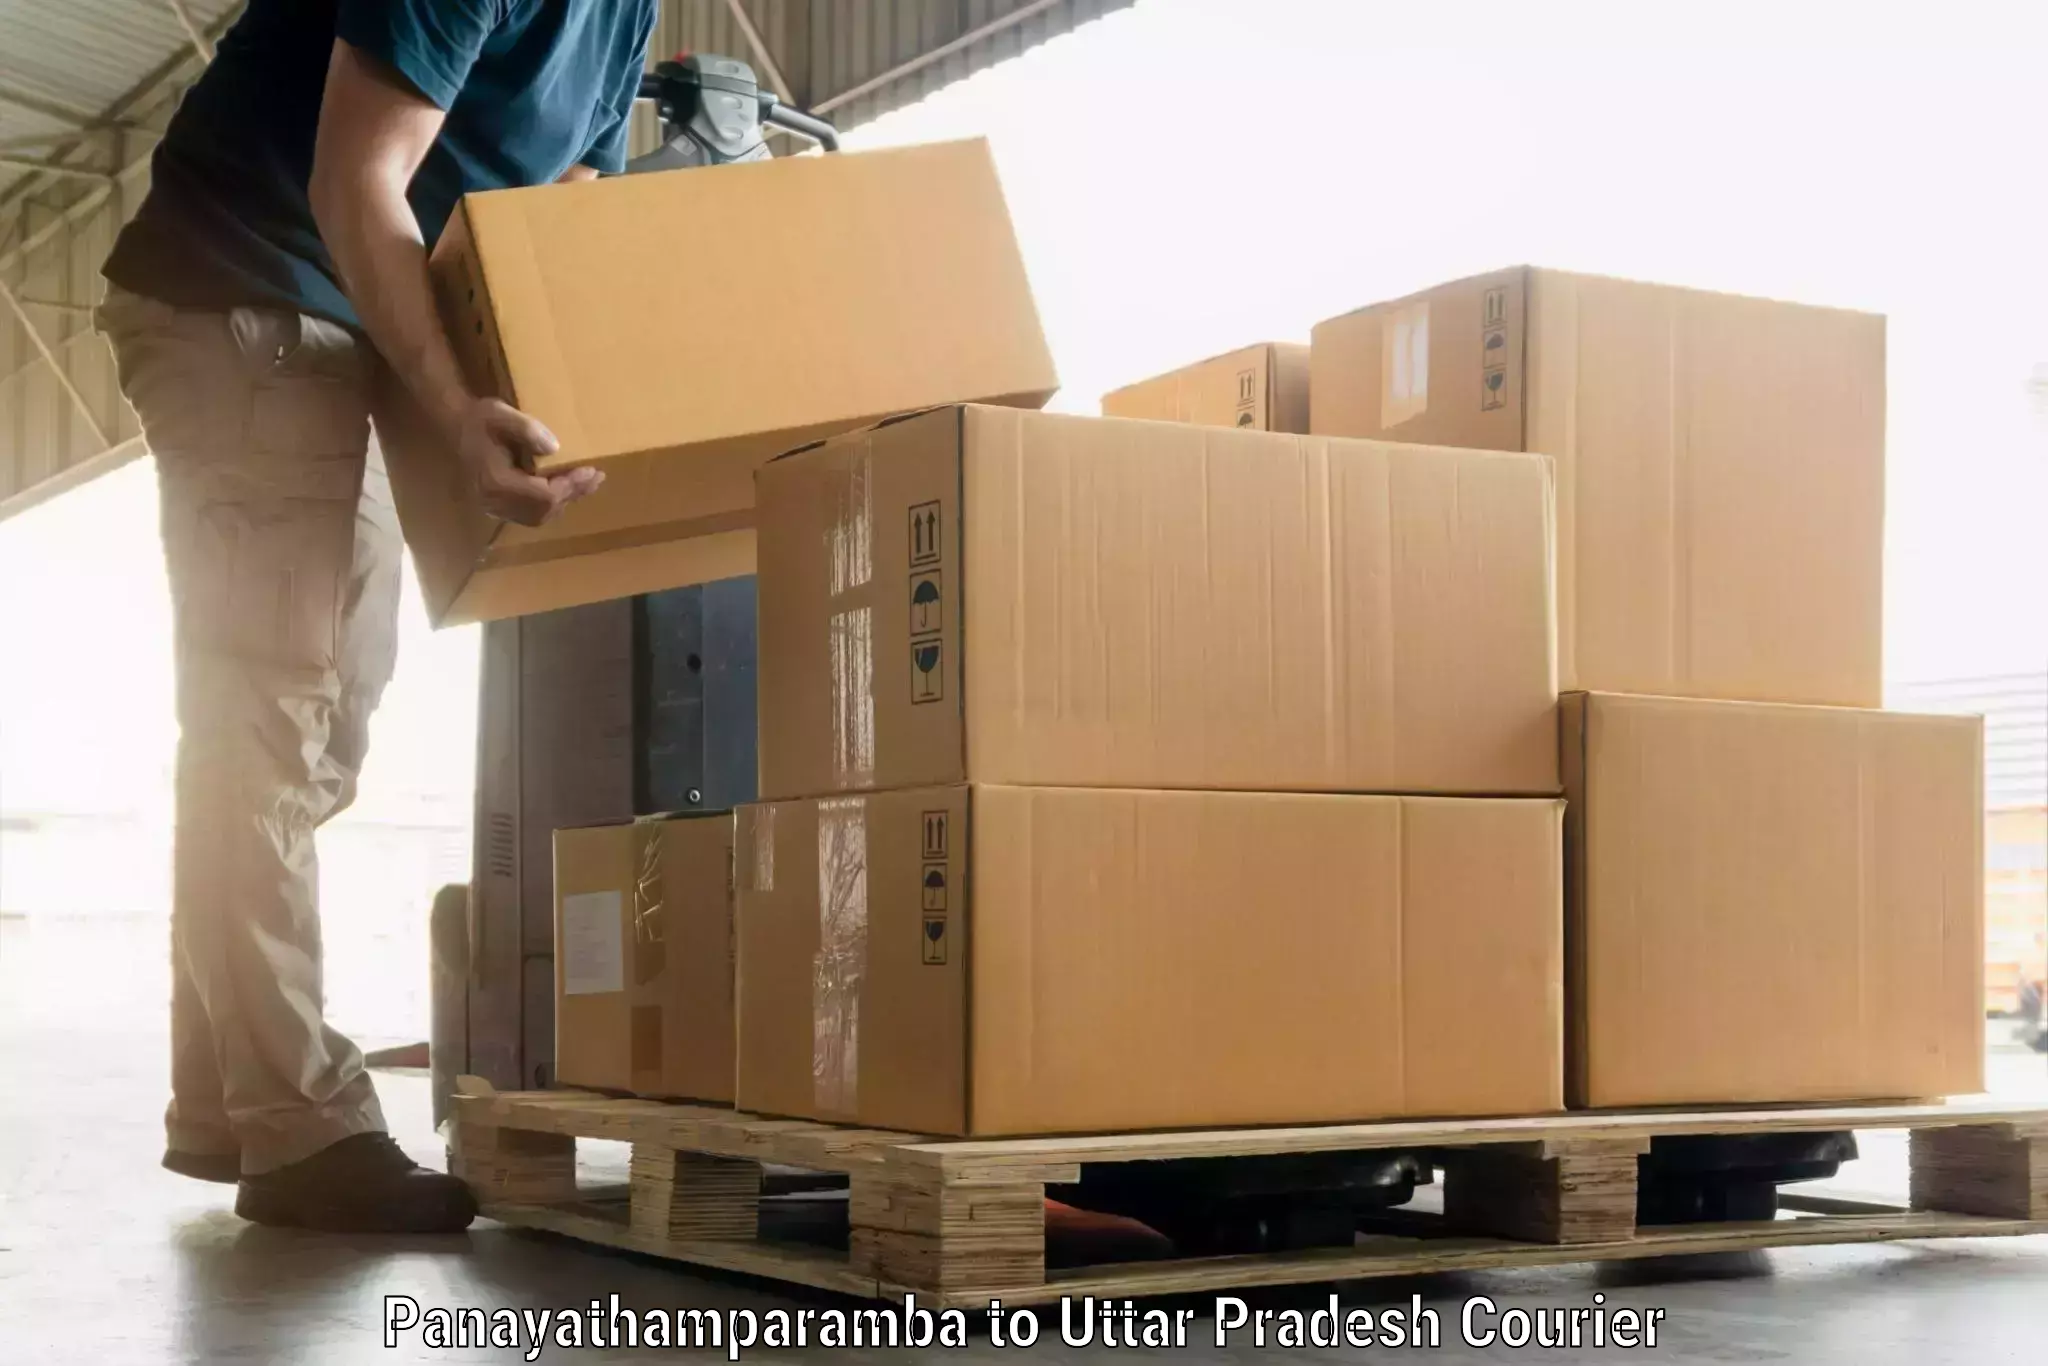 Luggage delivery system Panayathamparamba to Kannauj